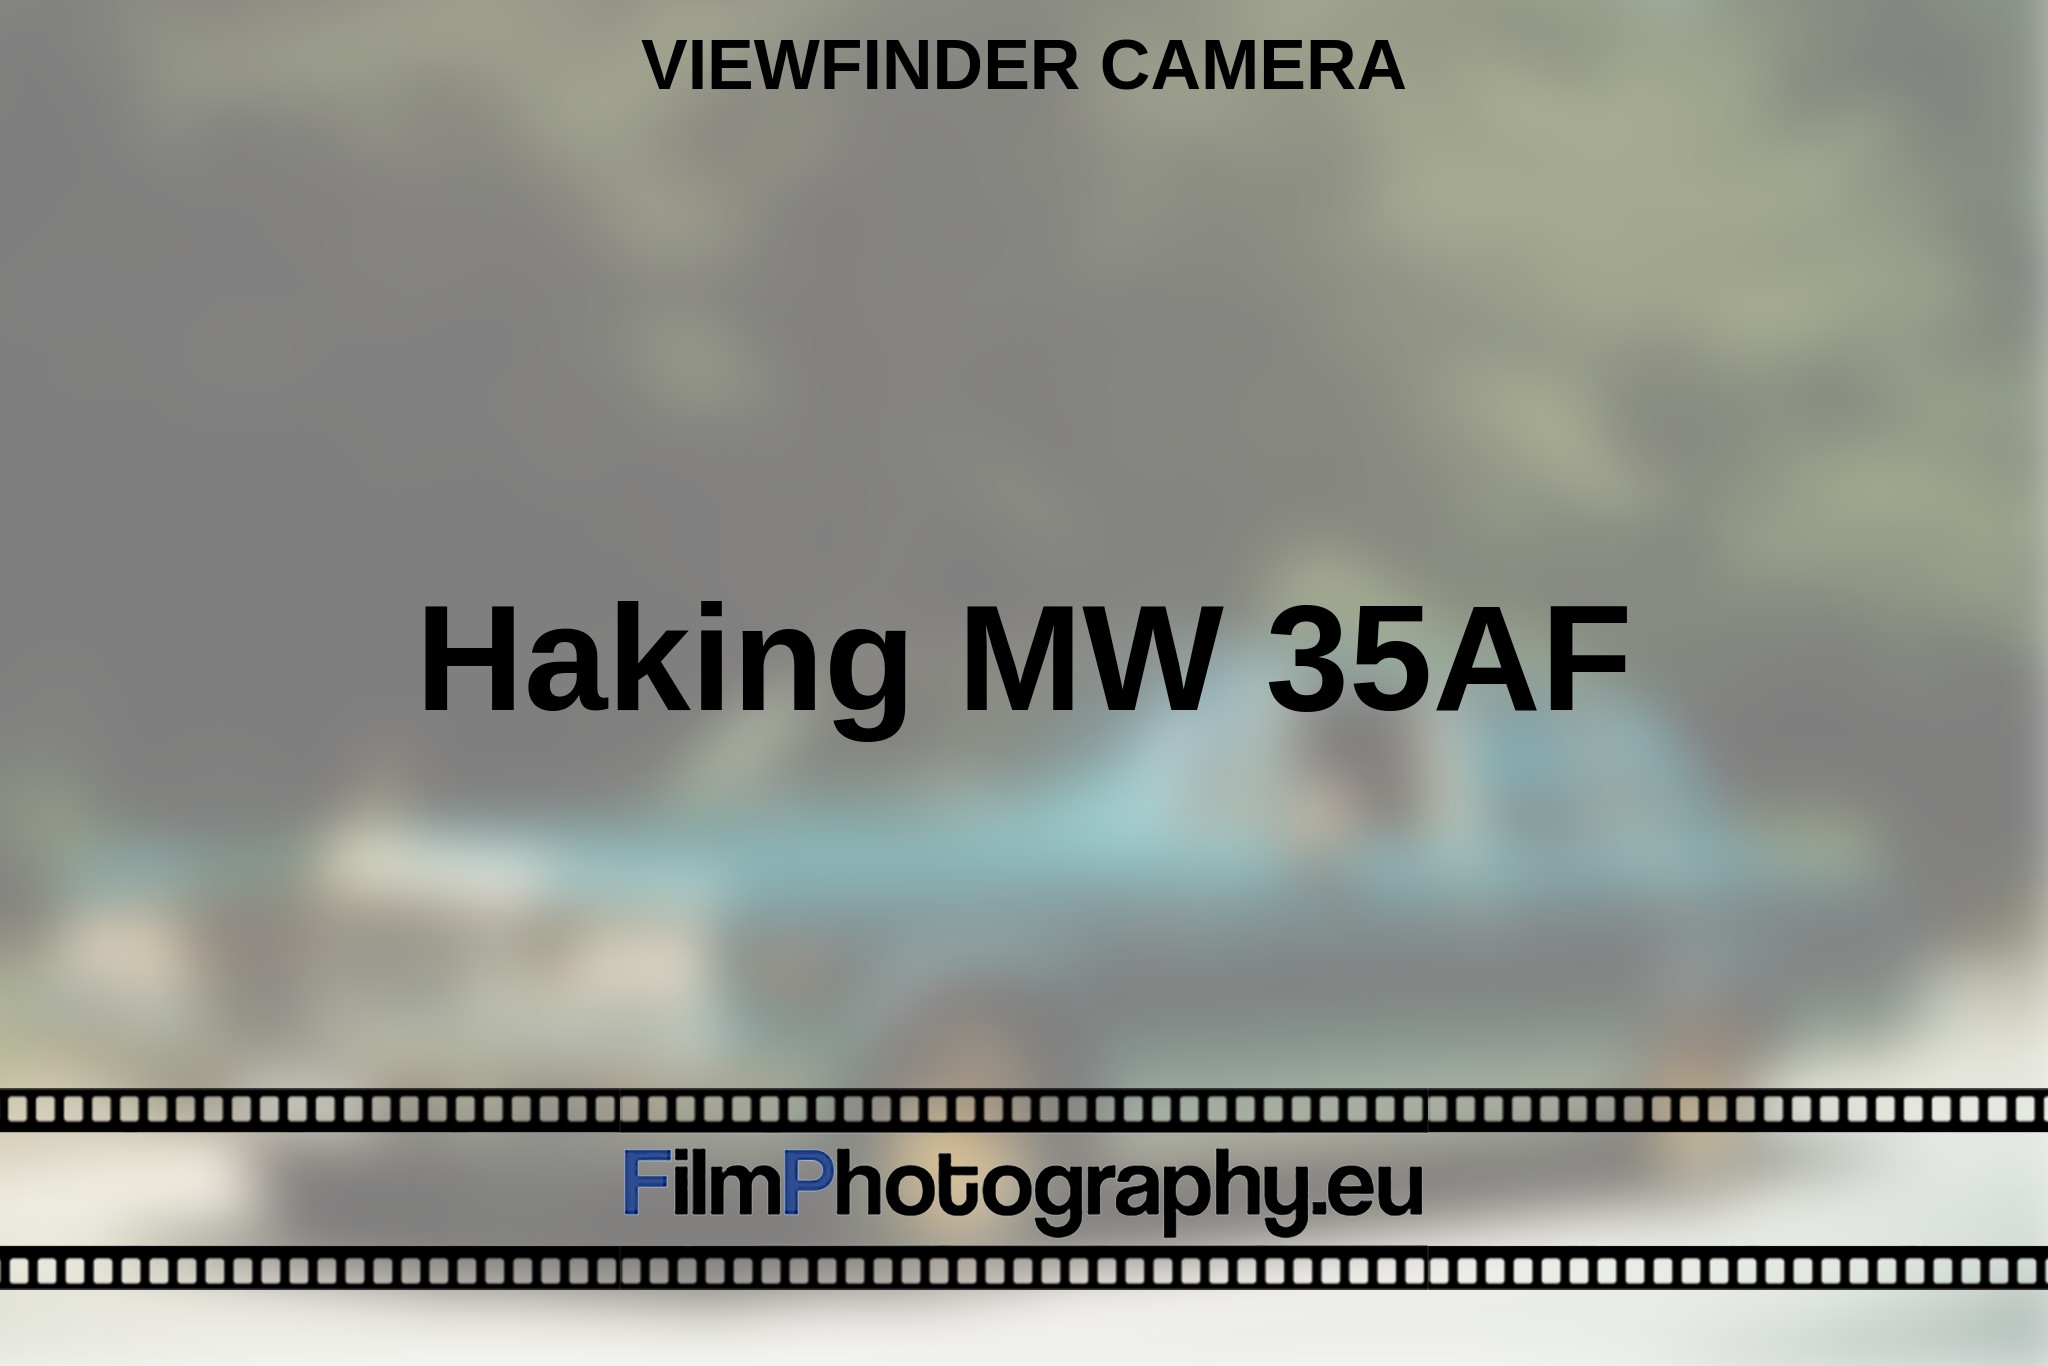 haking-mw-35af-viewfinder-camera-en-bnv.jpg